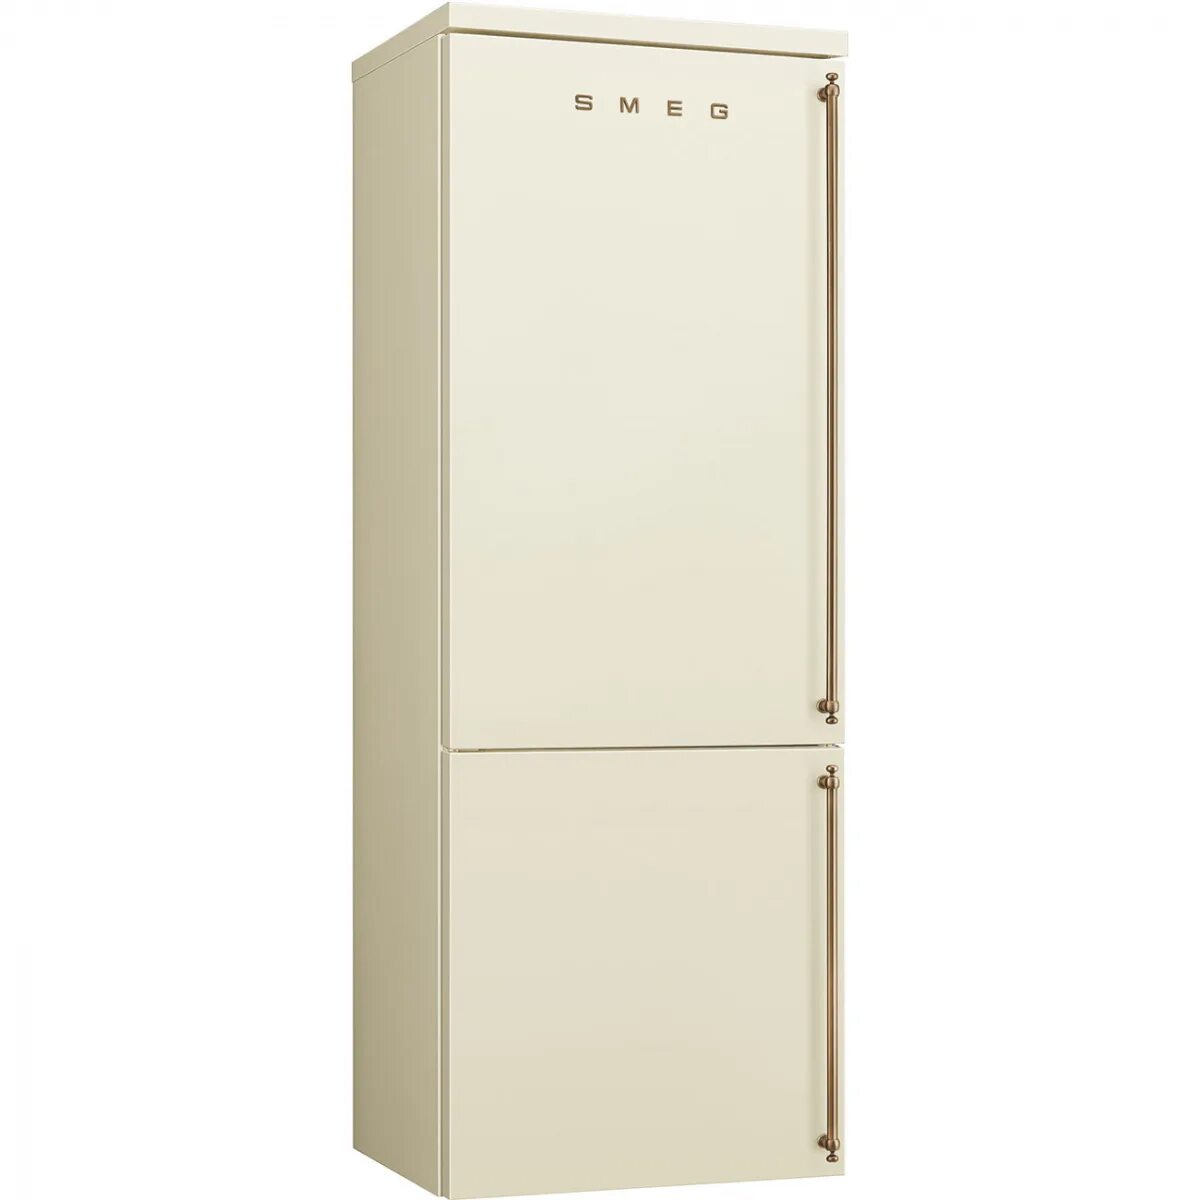 Холодильник Sharp SJ-xe59pmwh. Холодильник Smeg fa8003pos. Sharp SJ-xe55pmbe. Холодильники Smeg fa860p. Купить бежевый двухкамерный холодильник